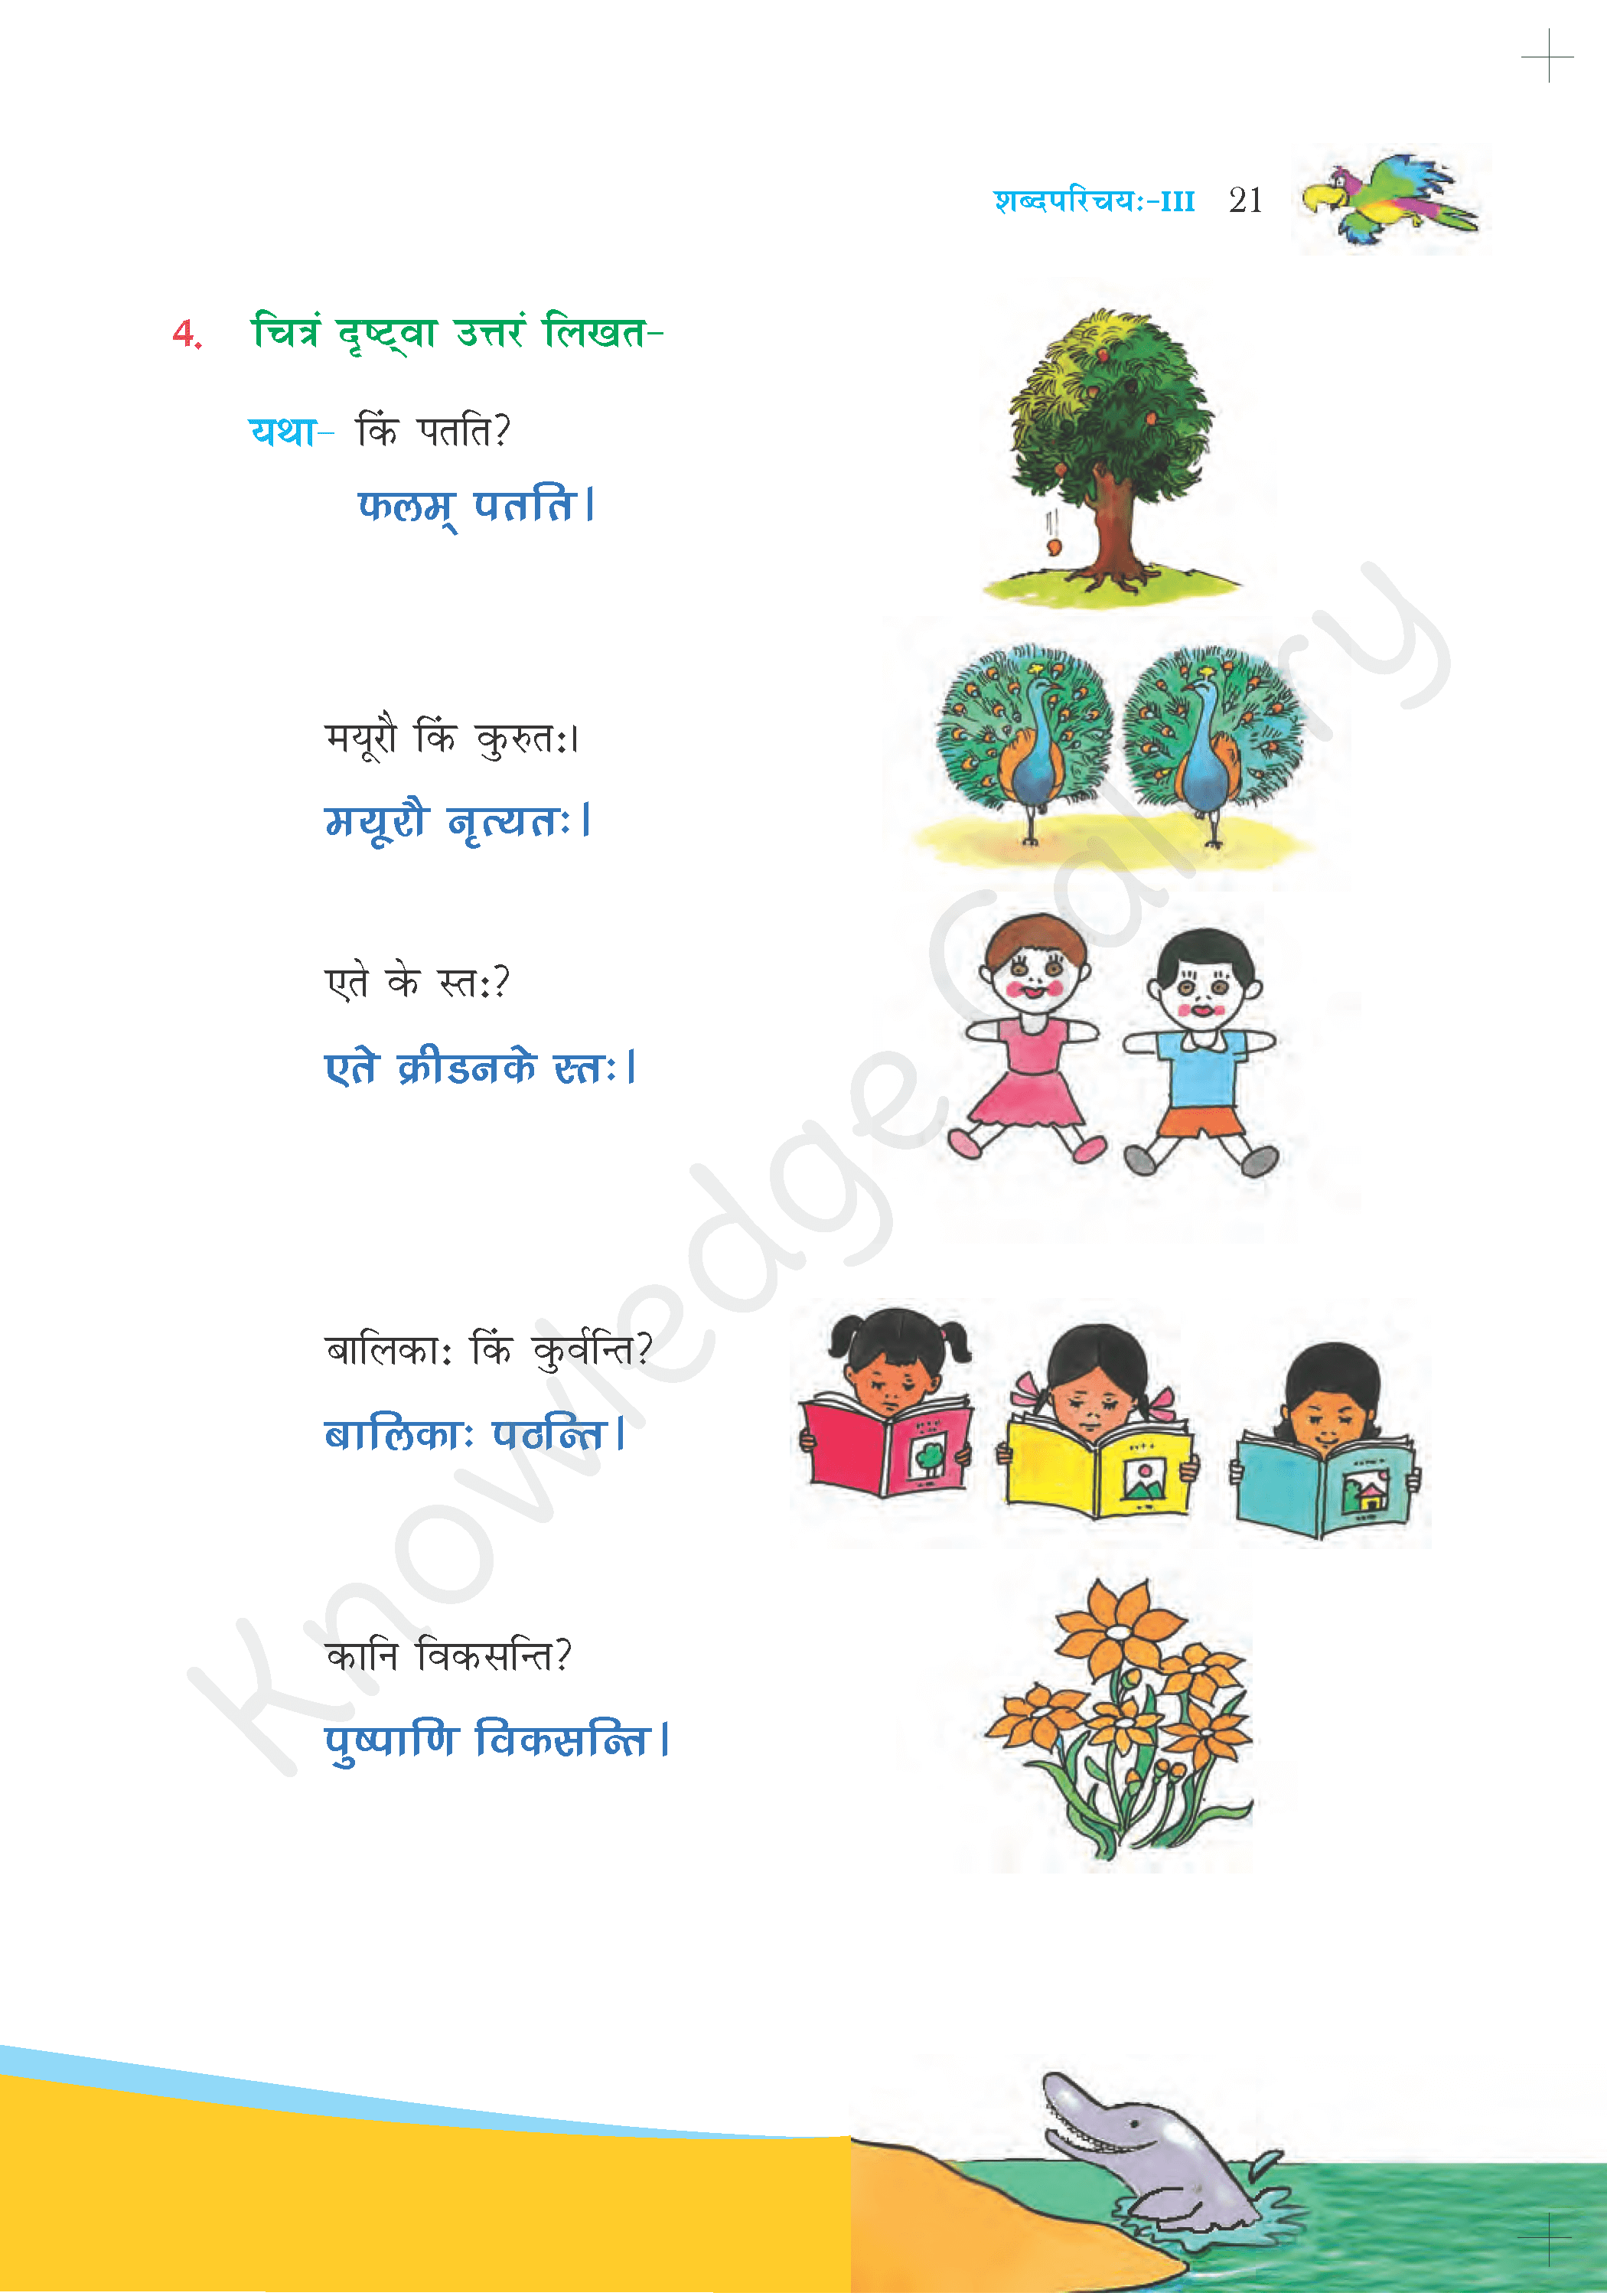 NCERT Solution For Class 6 Sanskrit Chapter 3 part 6